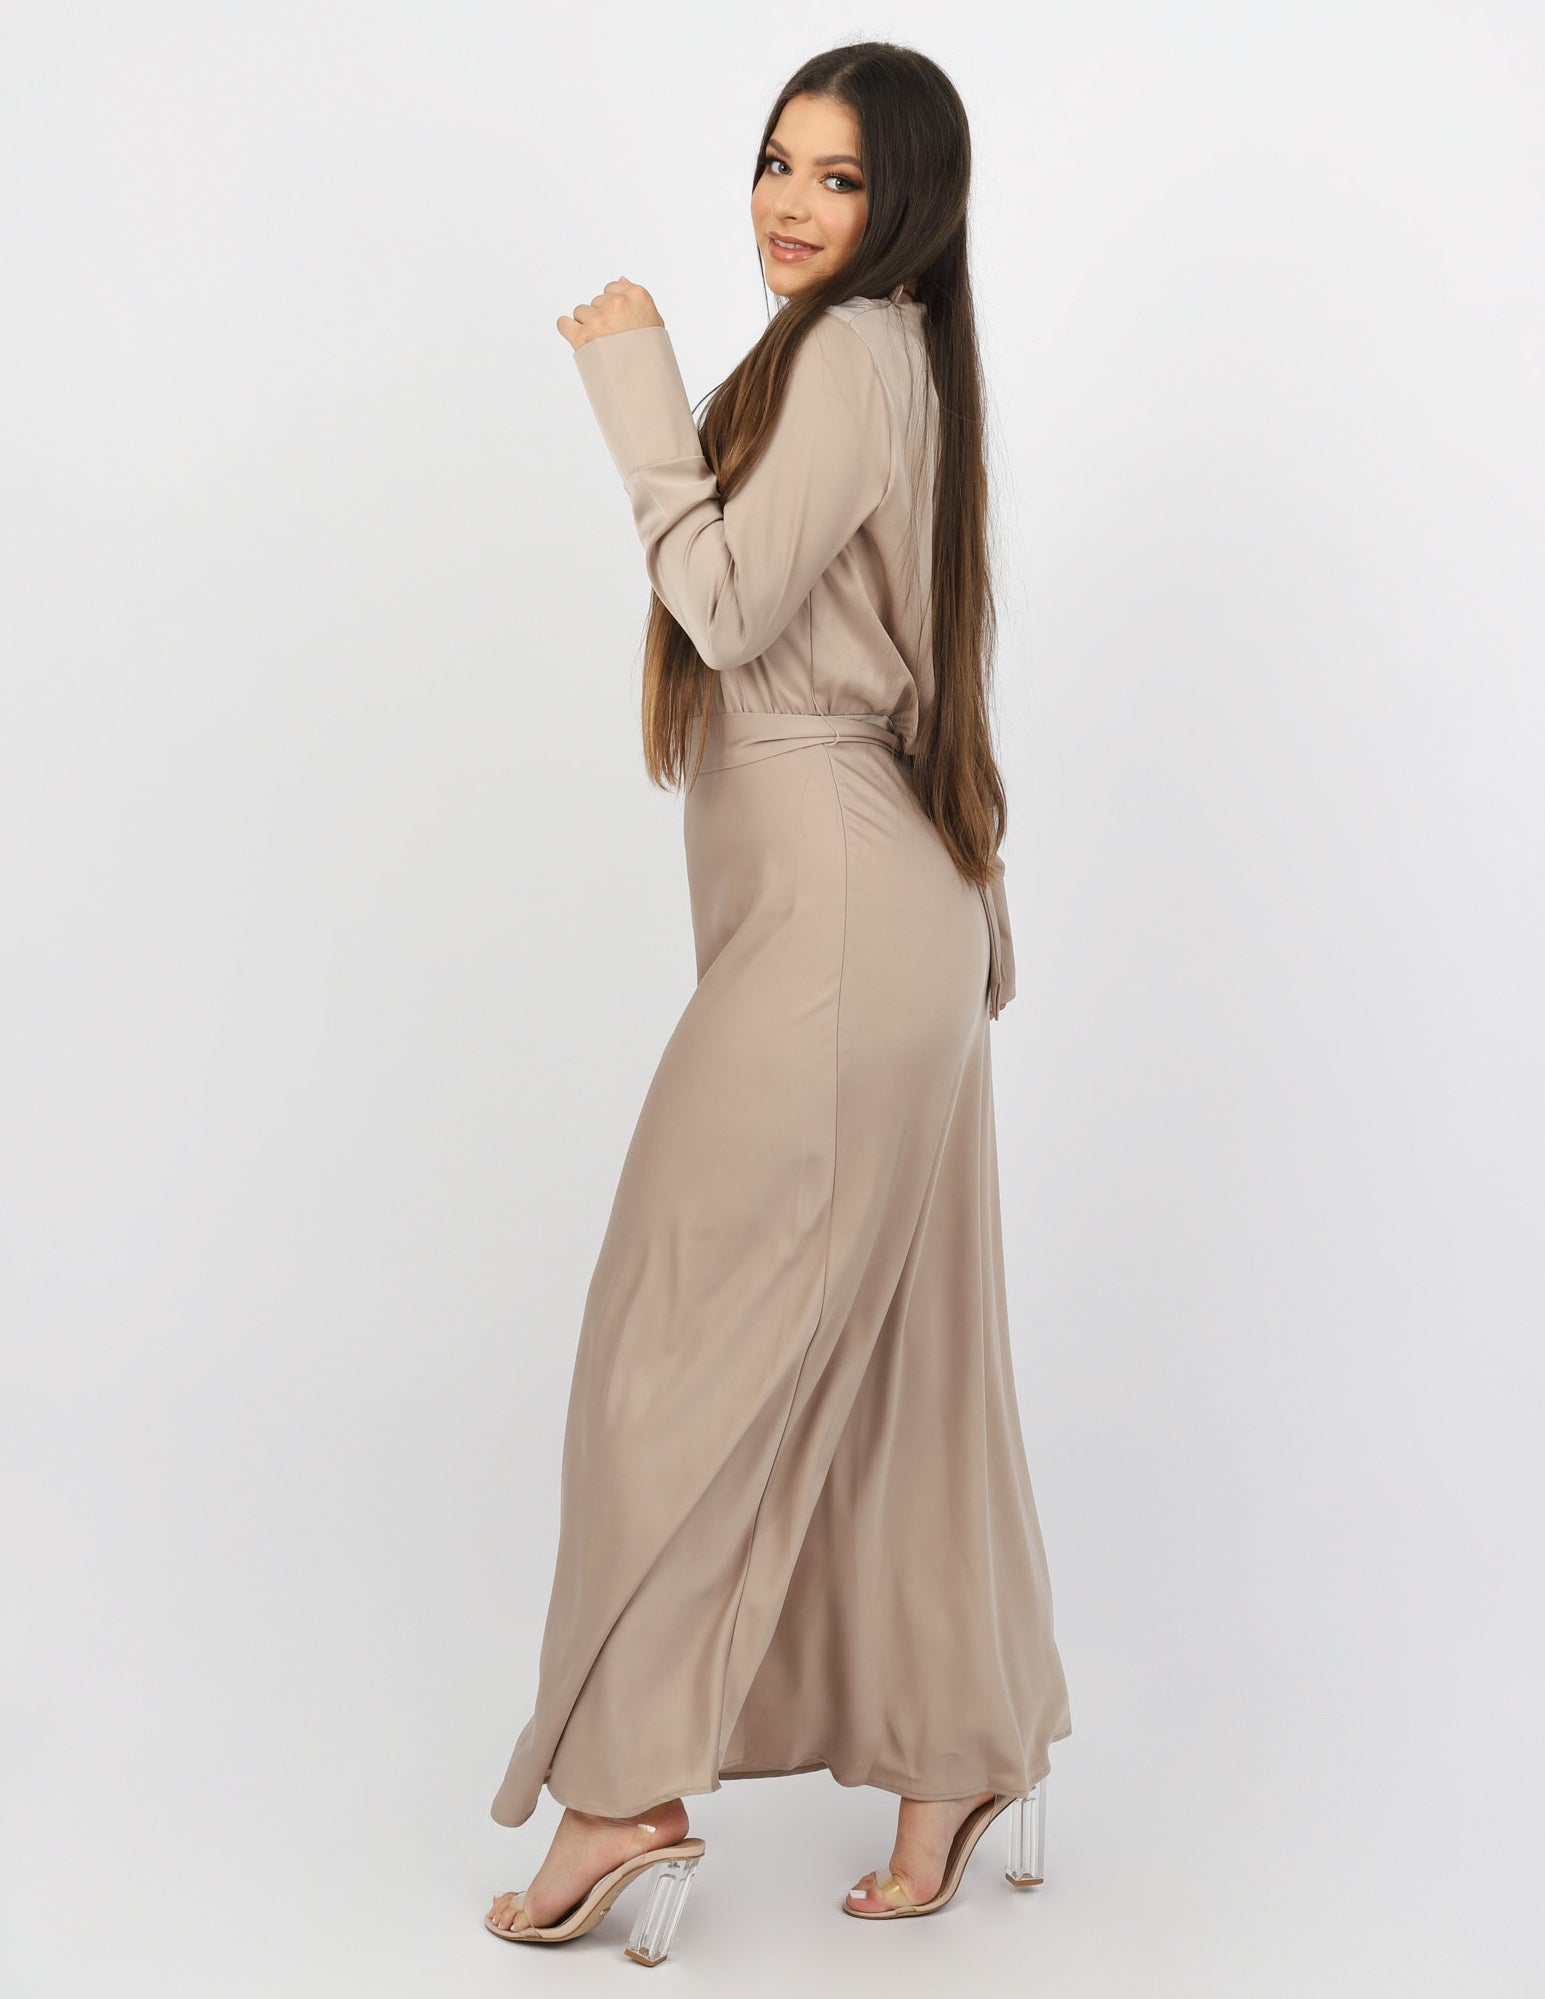 M7757Champagne-dress-abaya